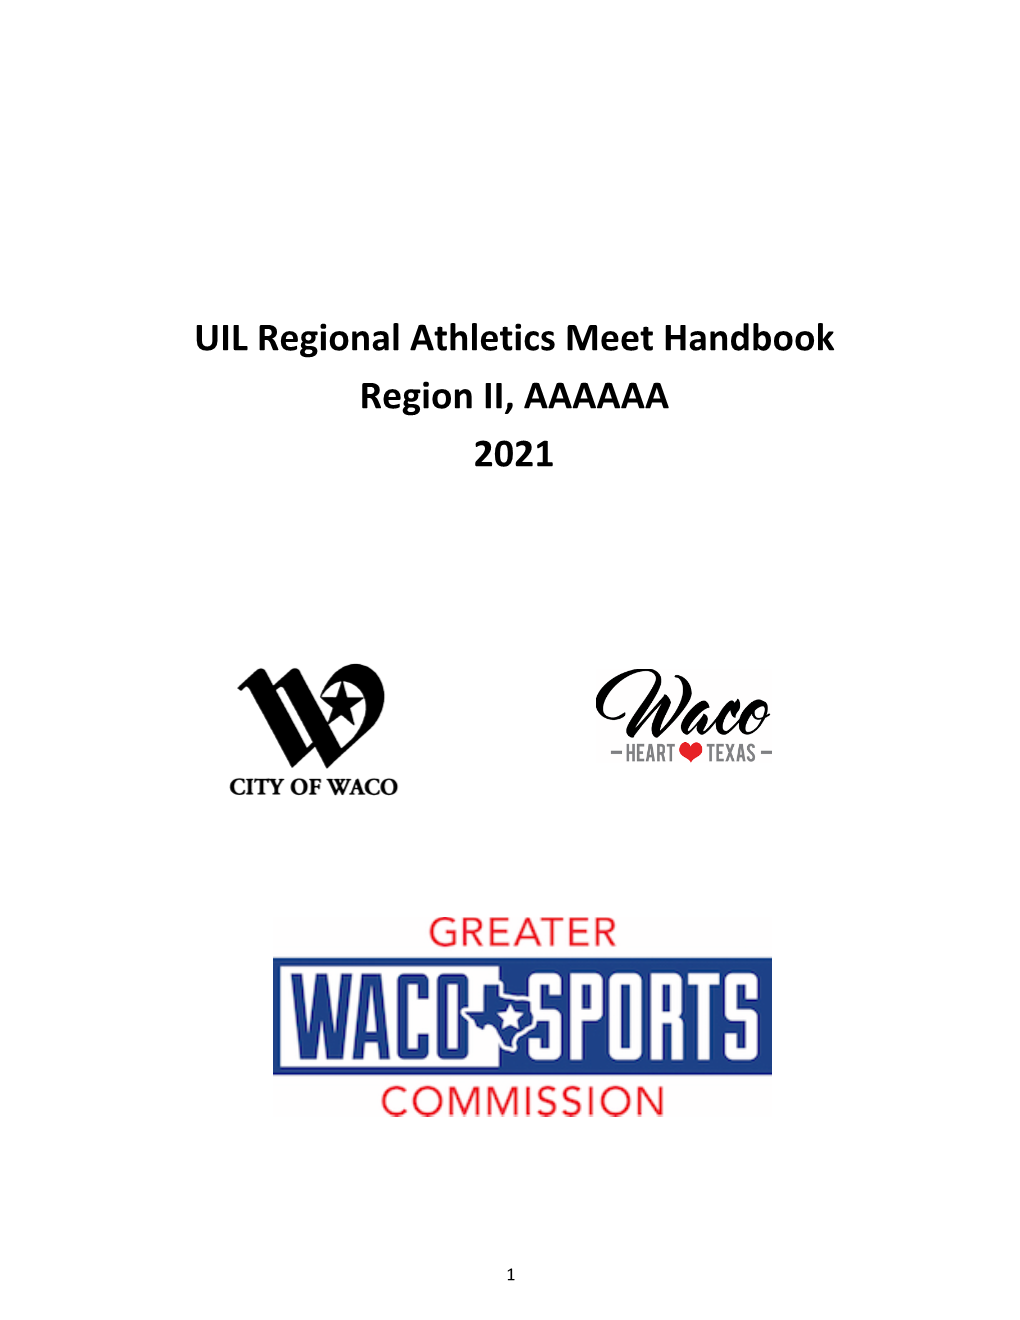 UIL Regional Athletics Meet Handbook Region II, AAAAAA 2021